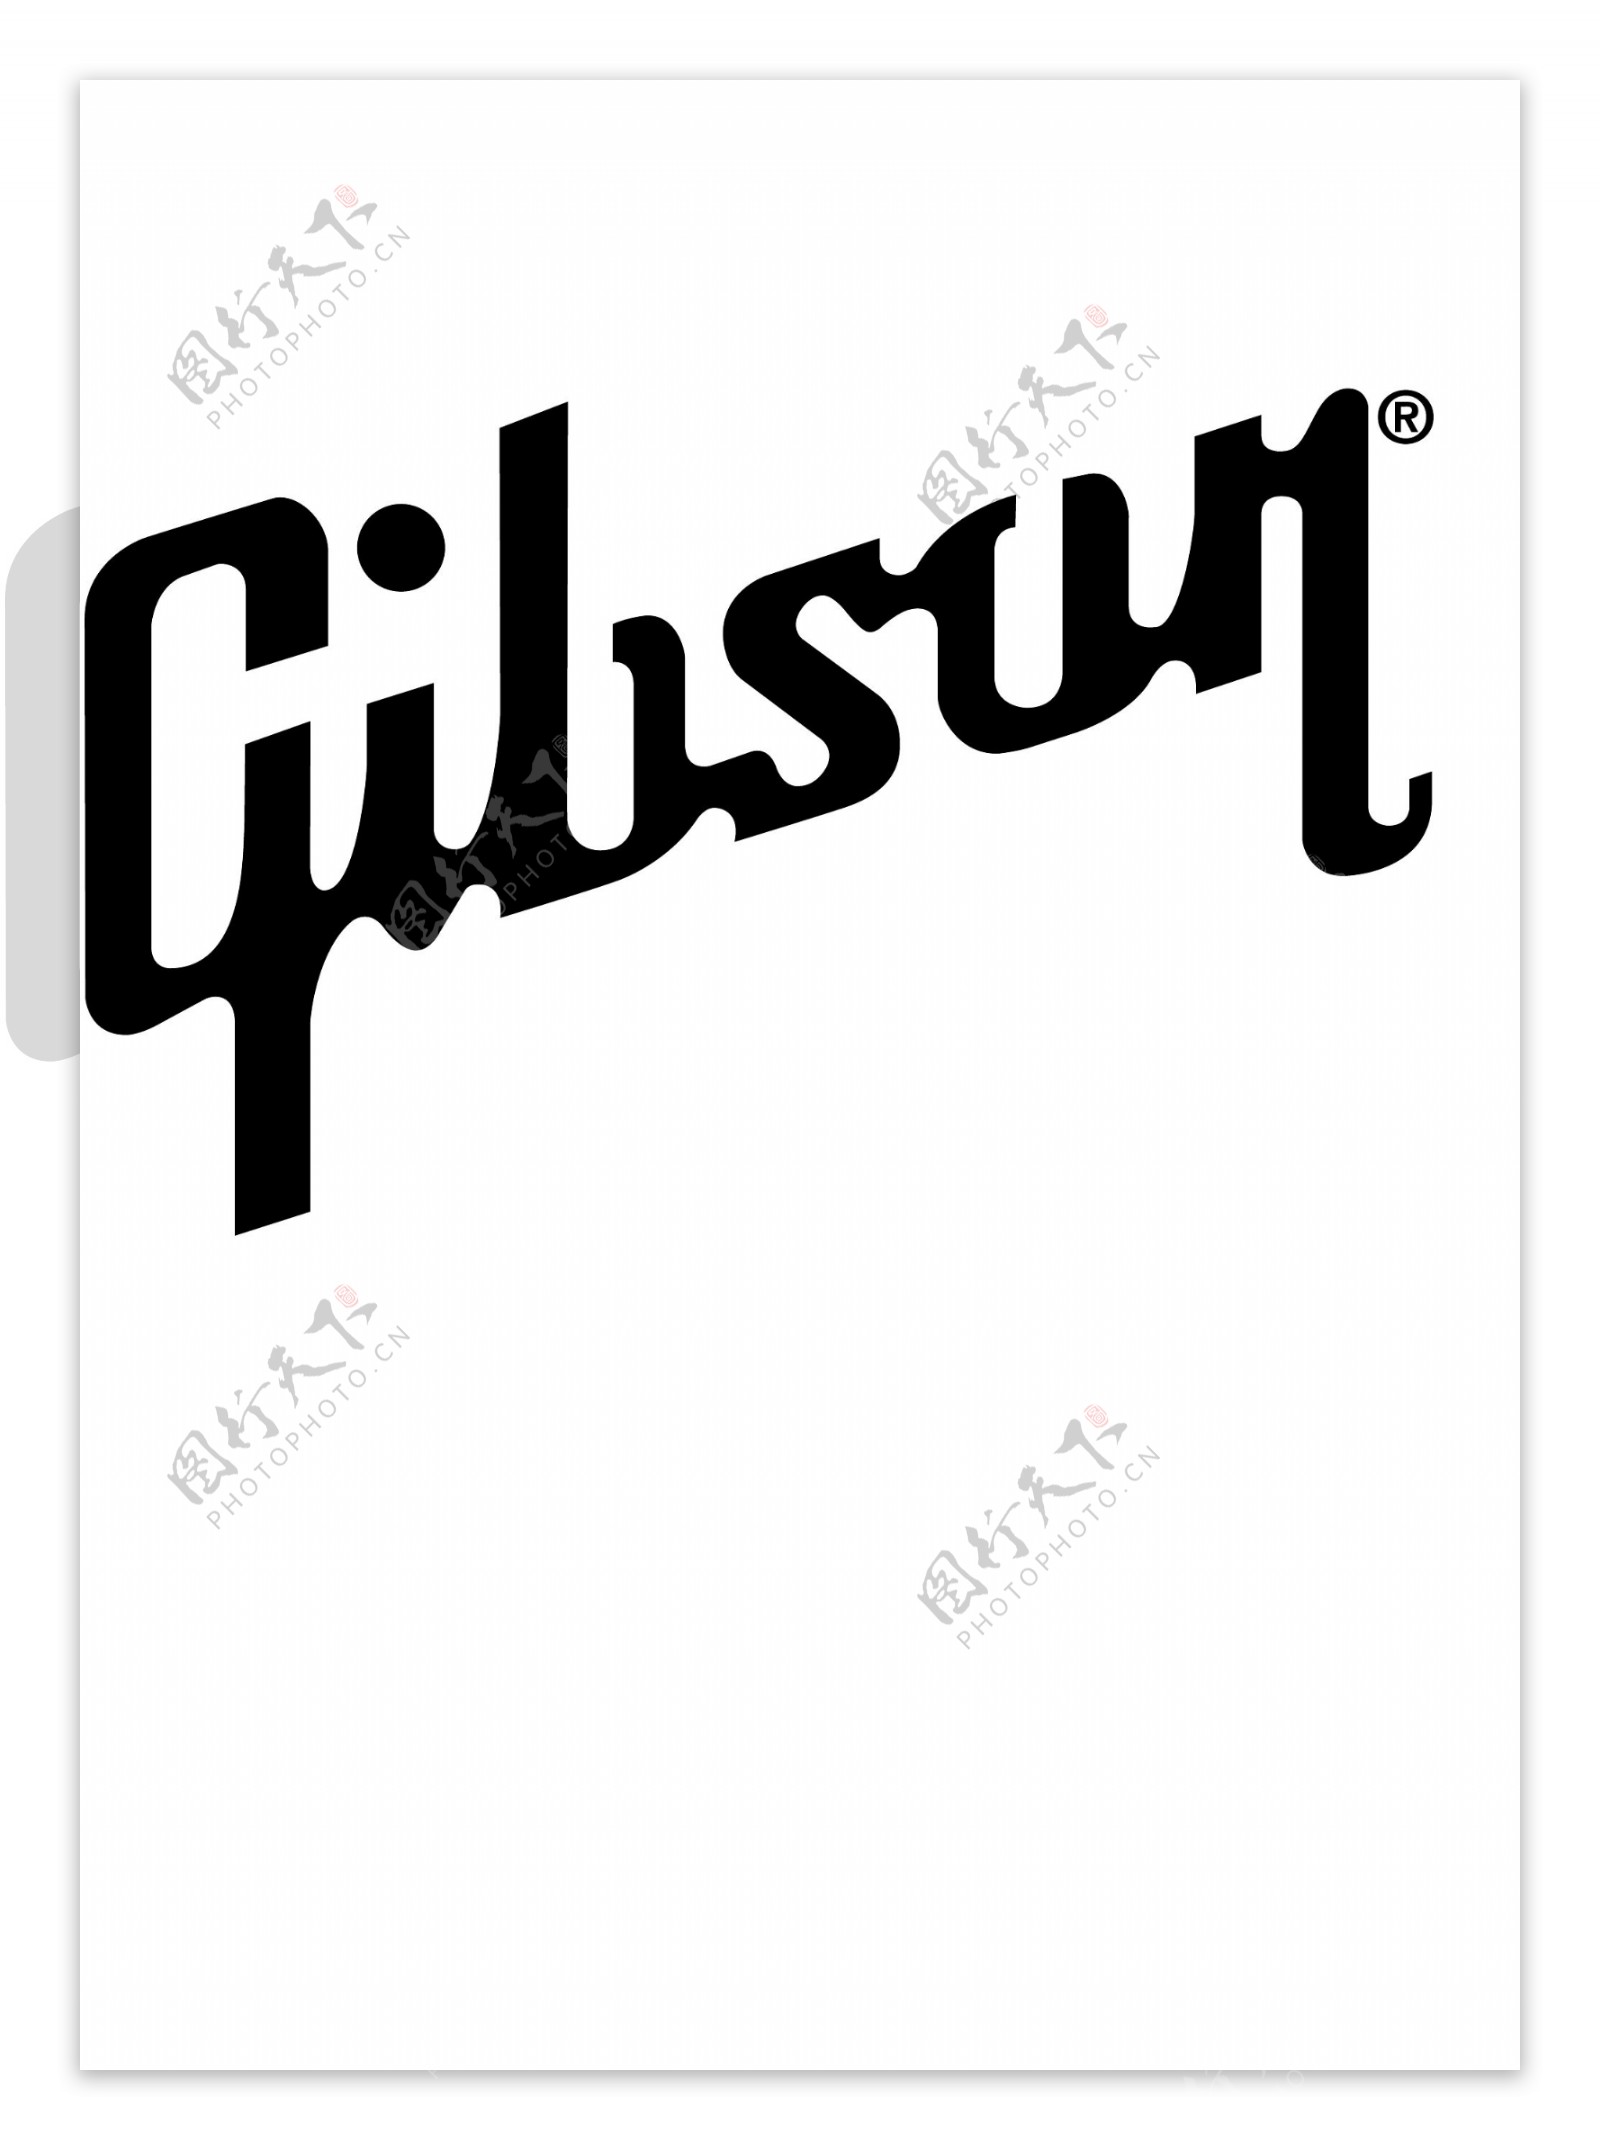 Gibson1logo设计欣赏Gibson1音乐公司标志下载标志设计欣赏